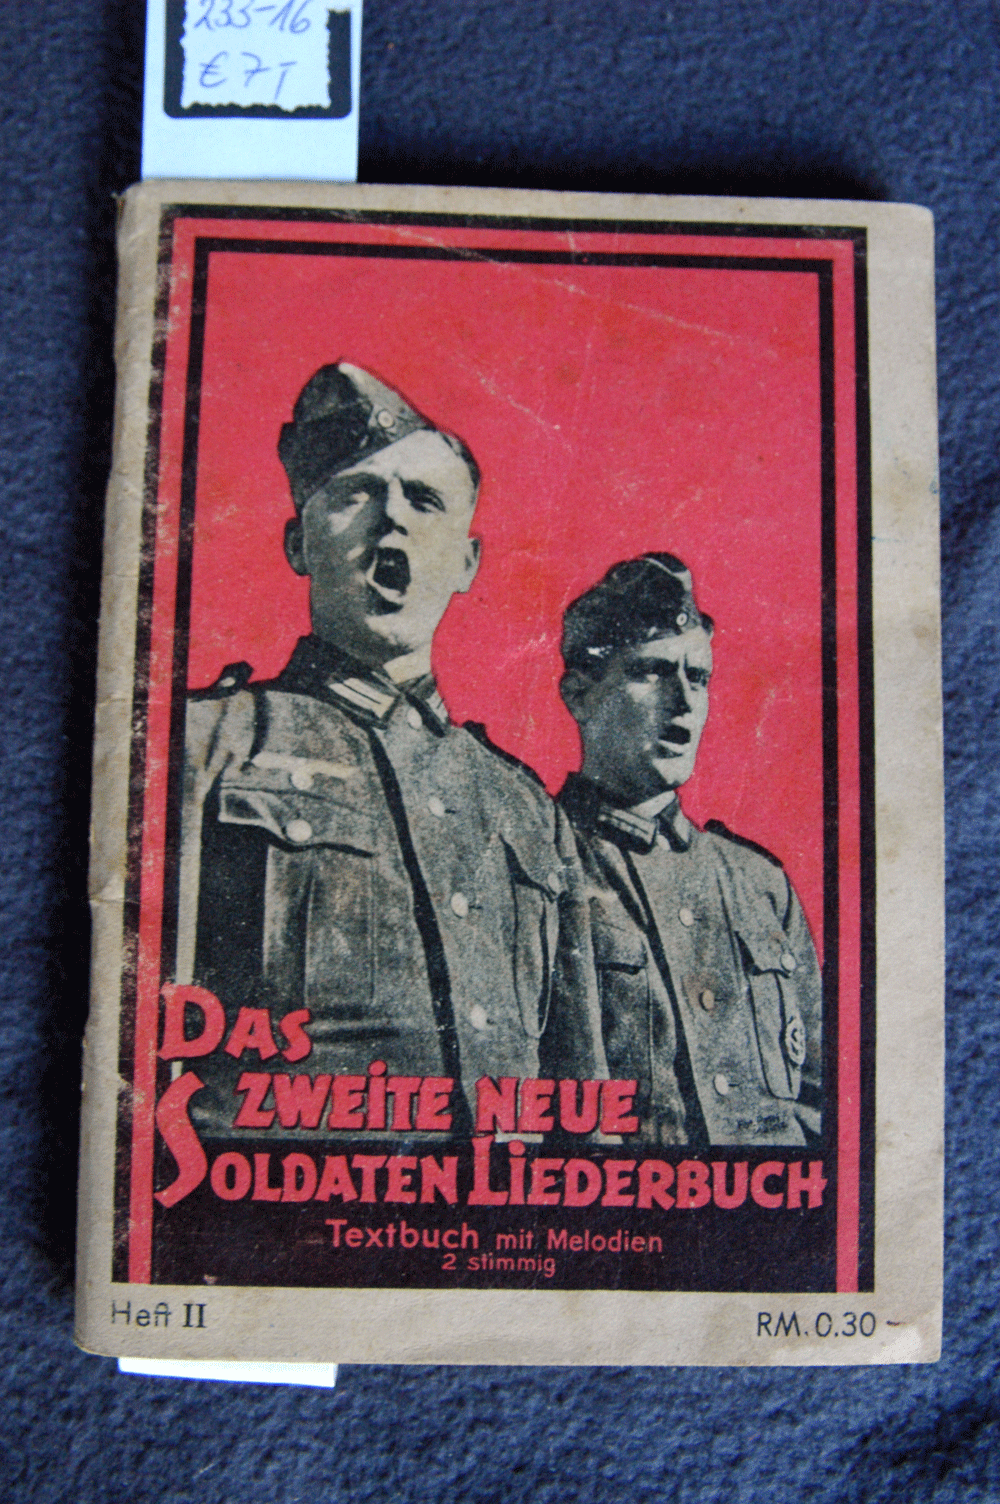 Das zweite neue Soldaten Liederbuch, Textbuch mit Melodien, 2 stimmig, Heft II, RM 0,30, 74 S.